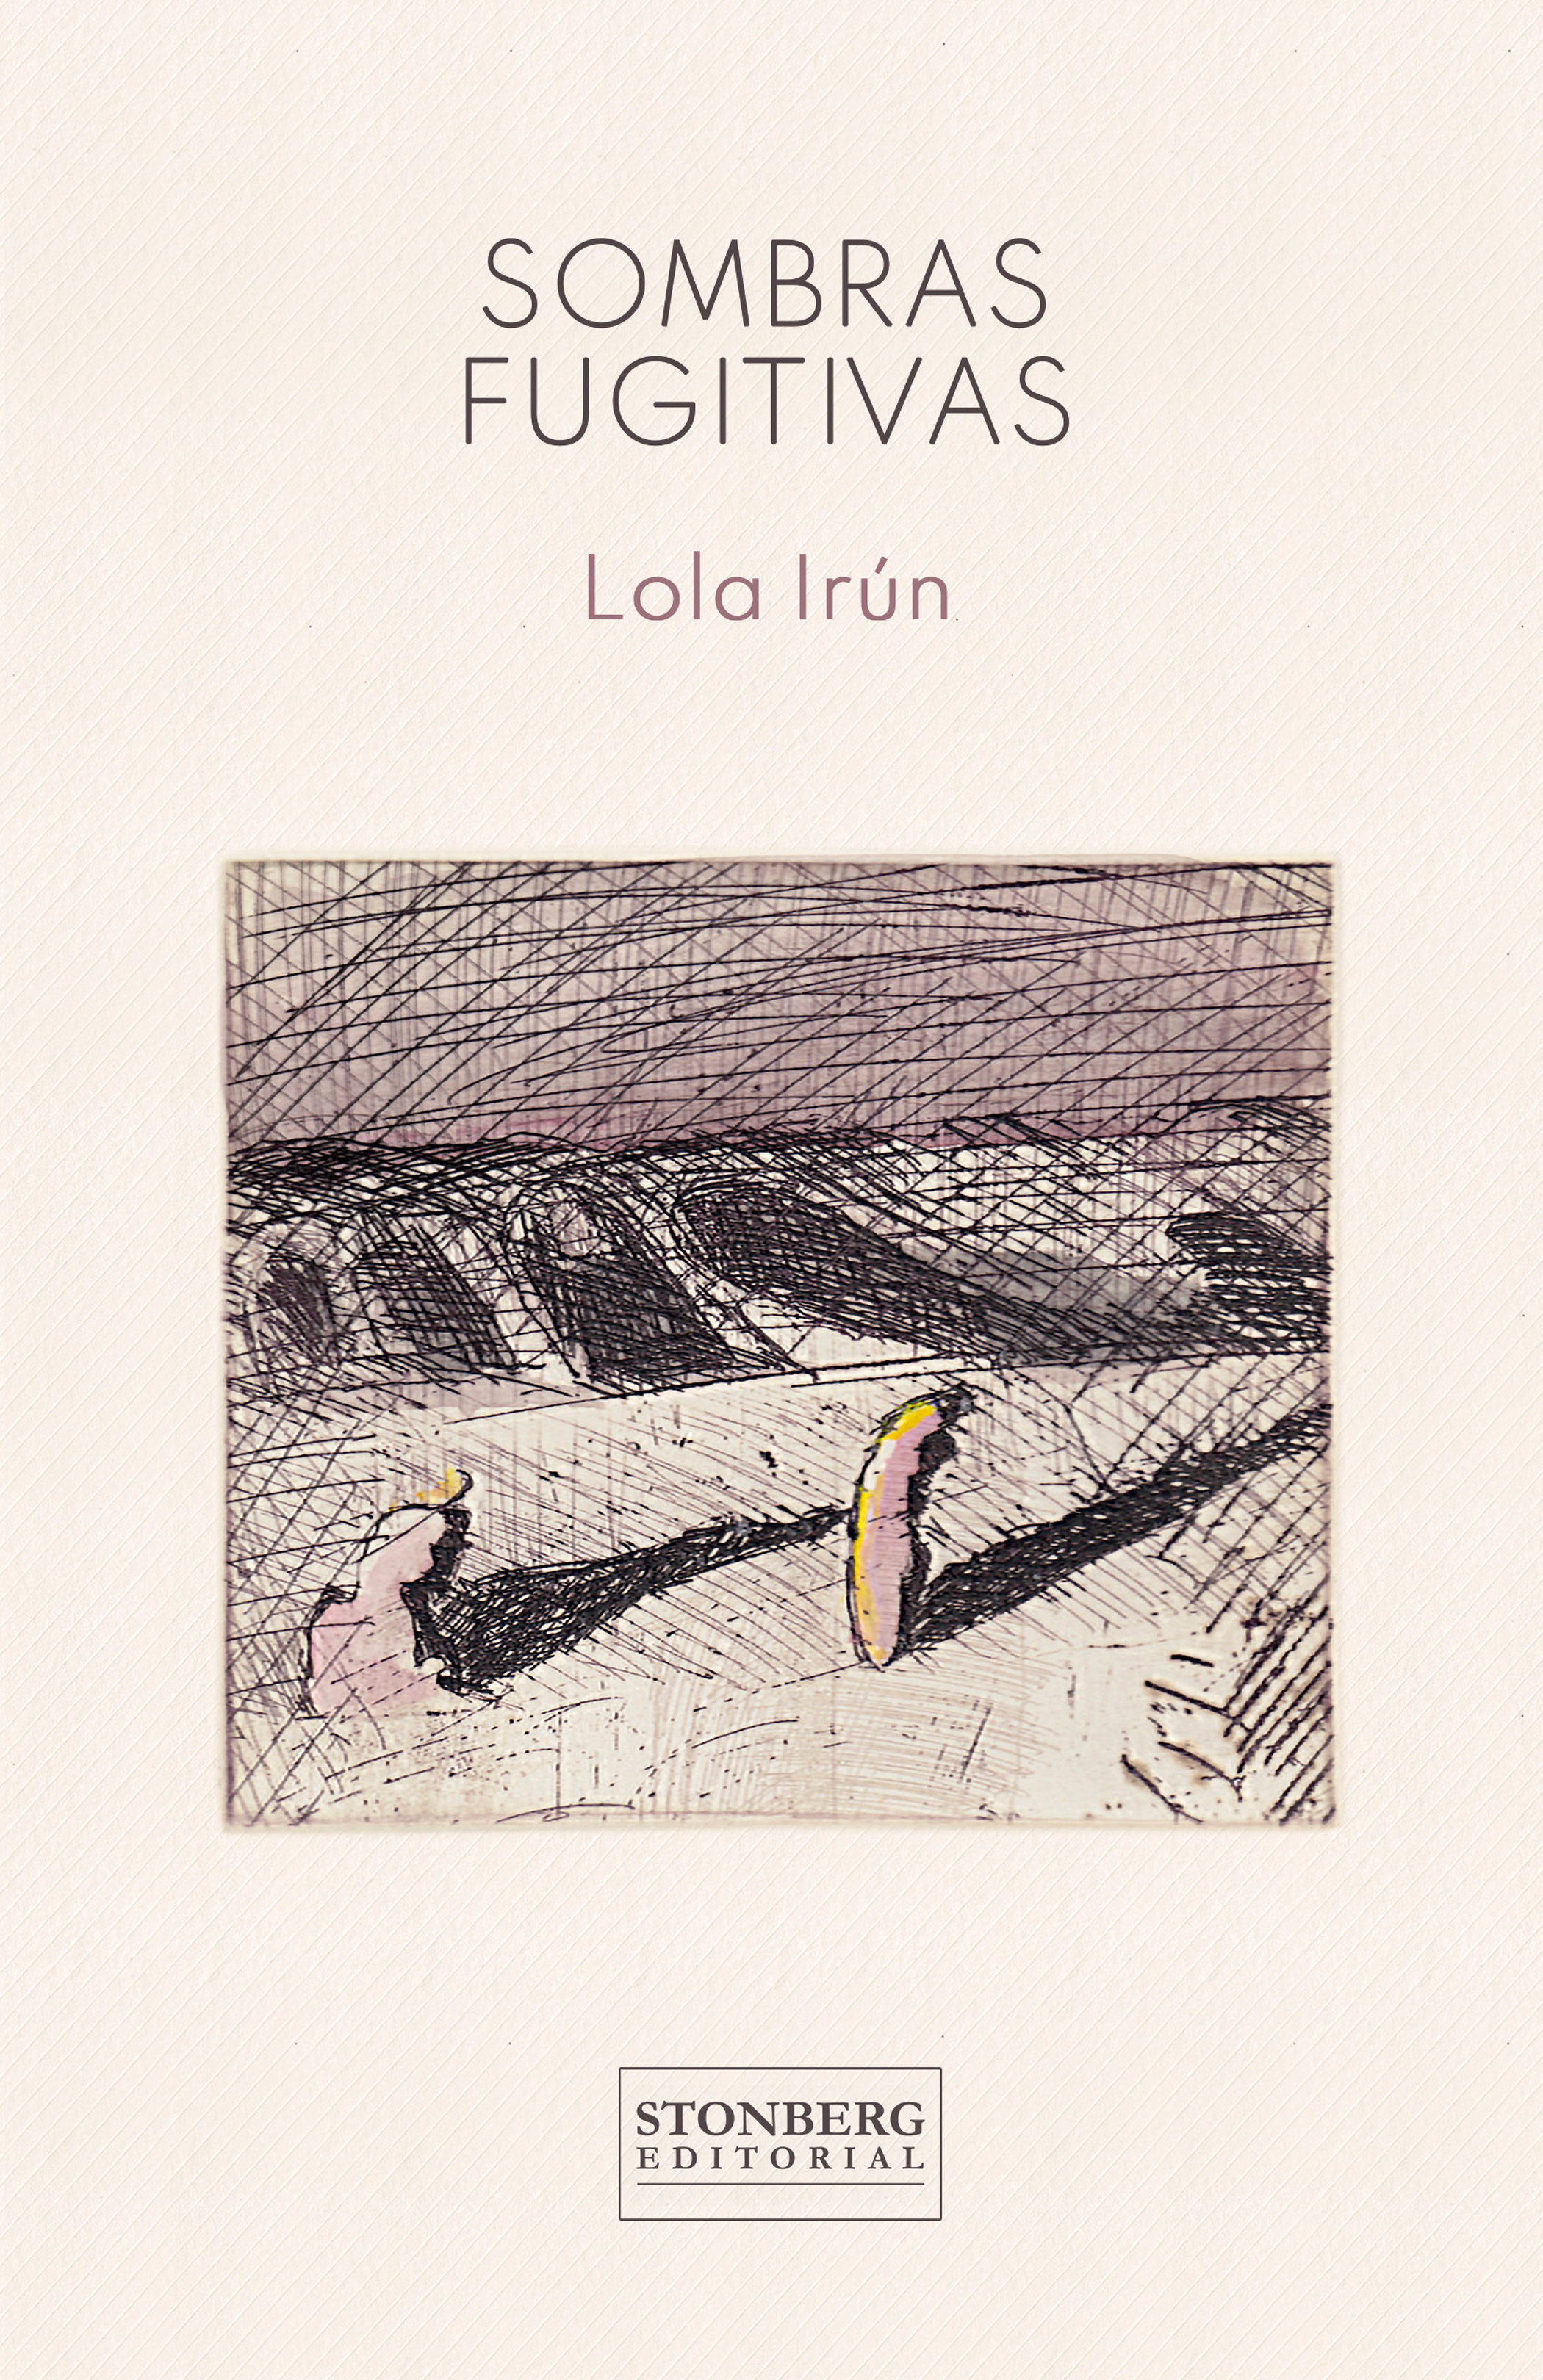 Cubierta del libro de poemas de la poeta y filóloga Lola Irún, «Sombras fugitivas»